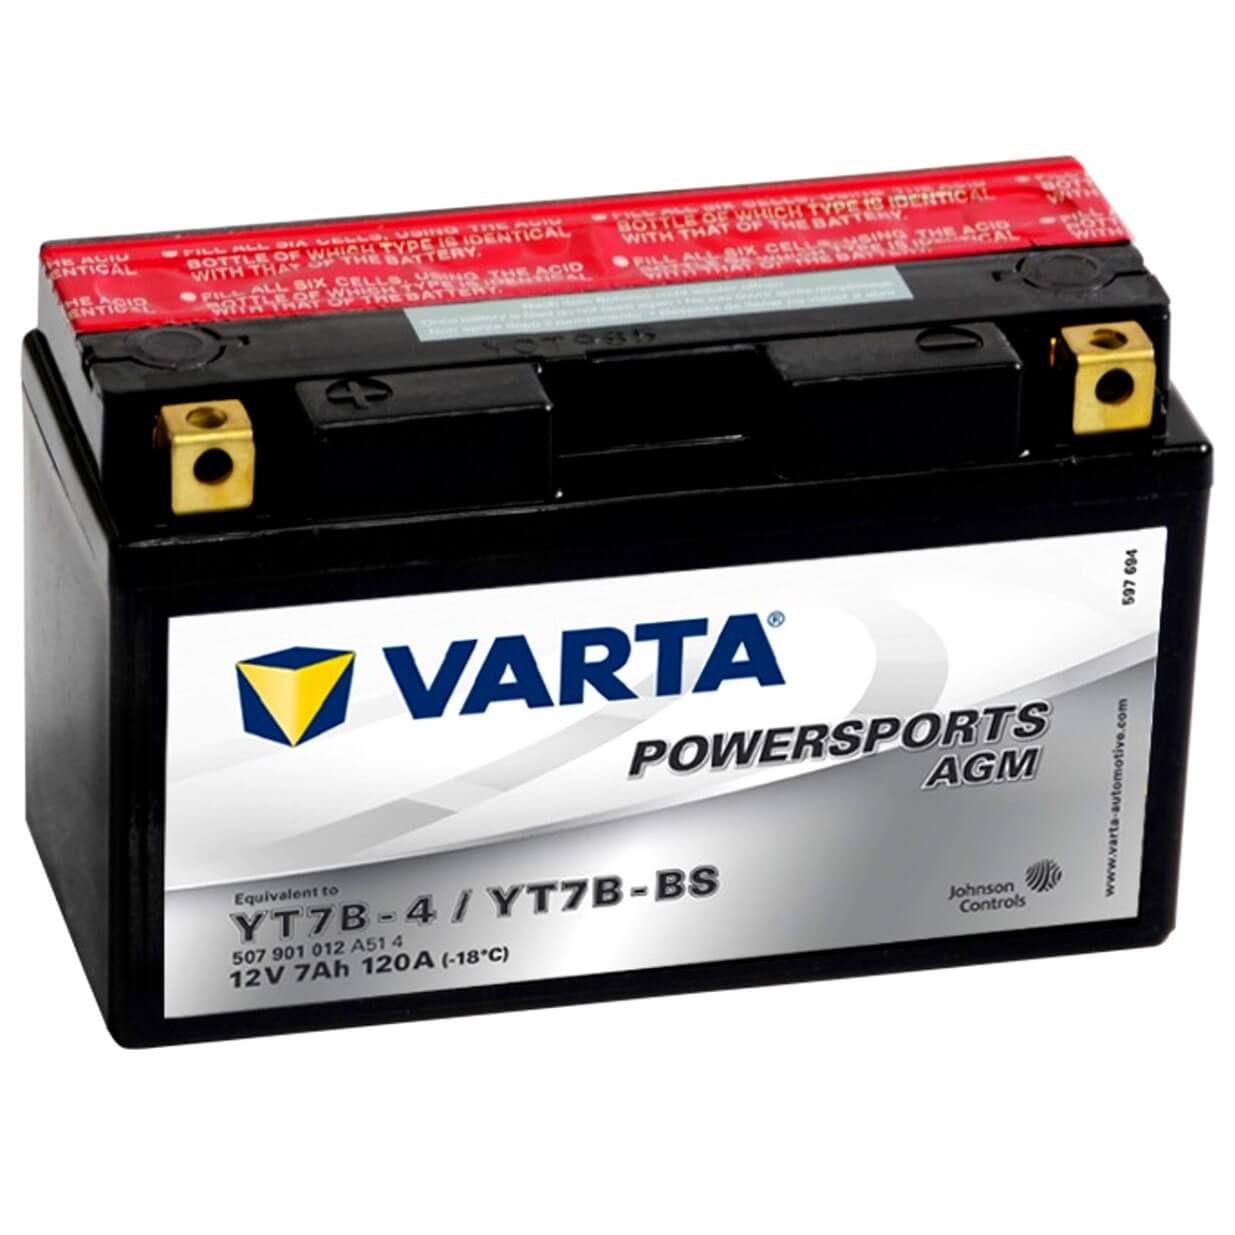 Varta Powersports 507901 AGM 12V 7Ah 120A